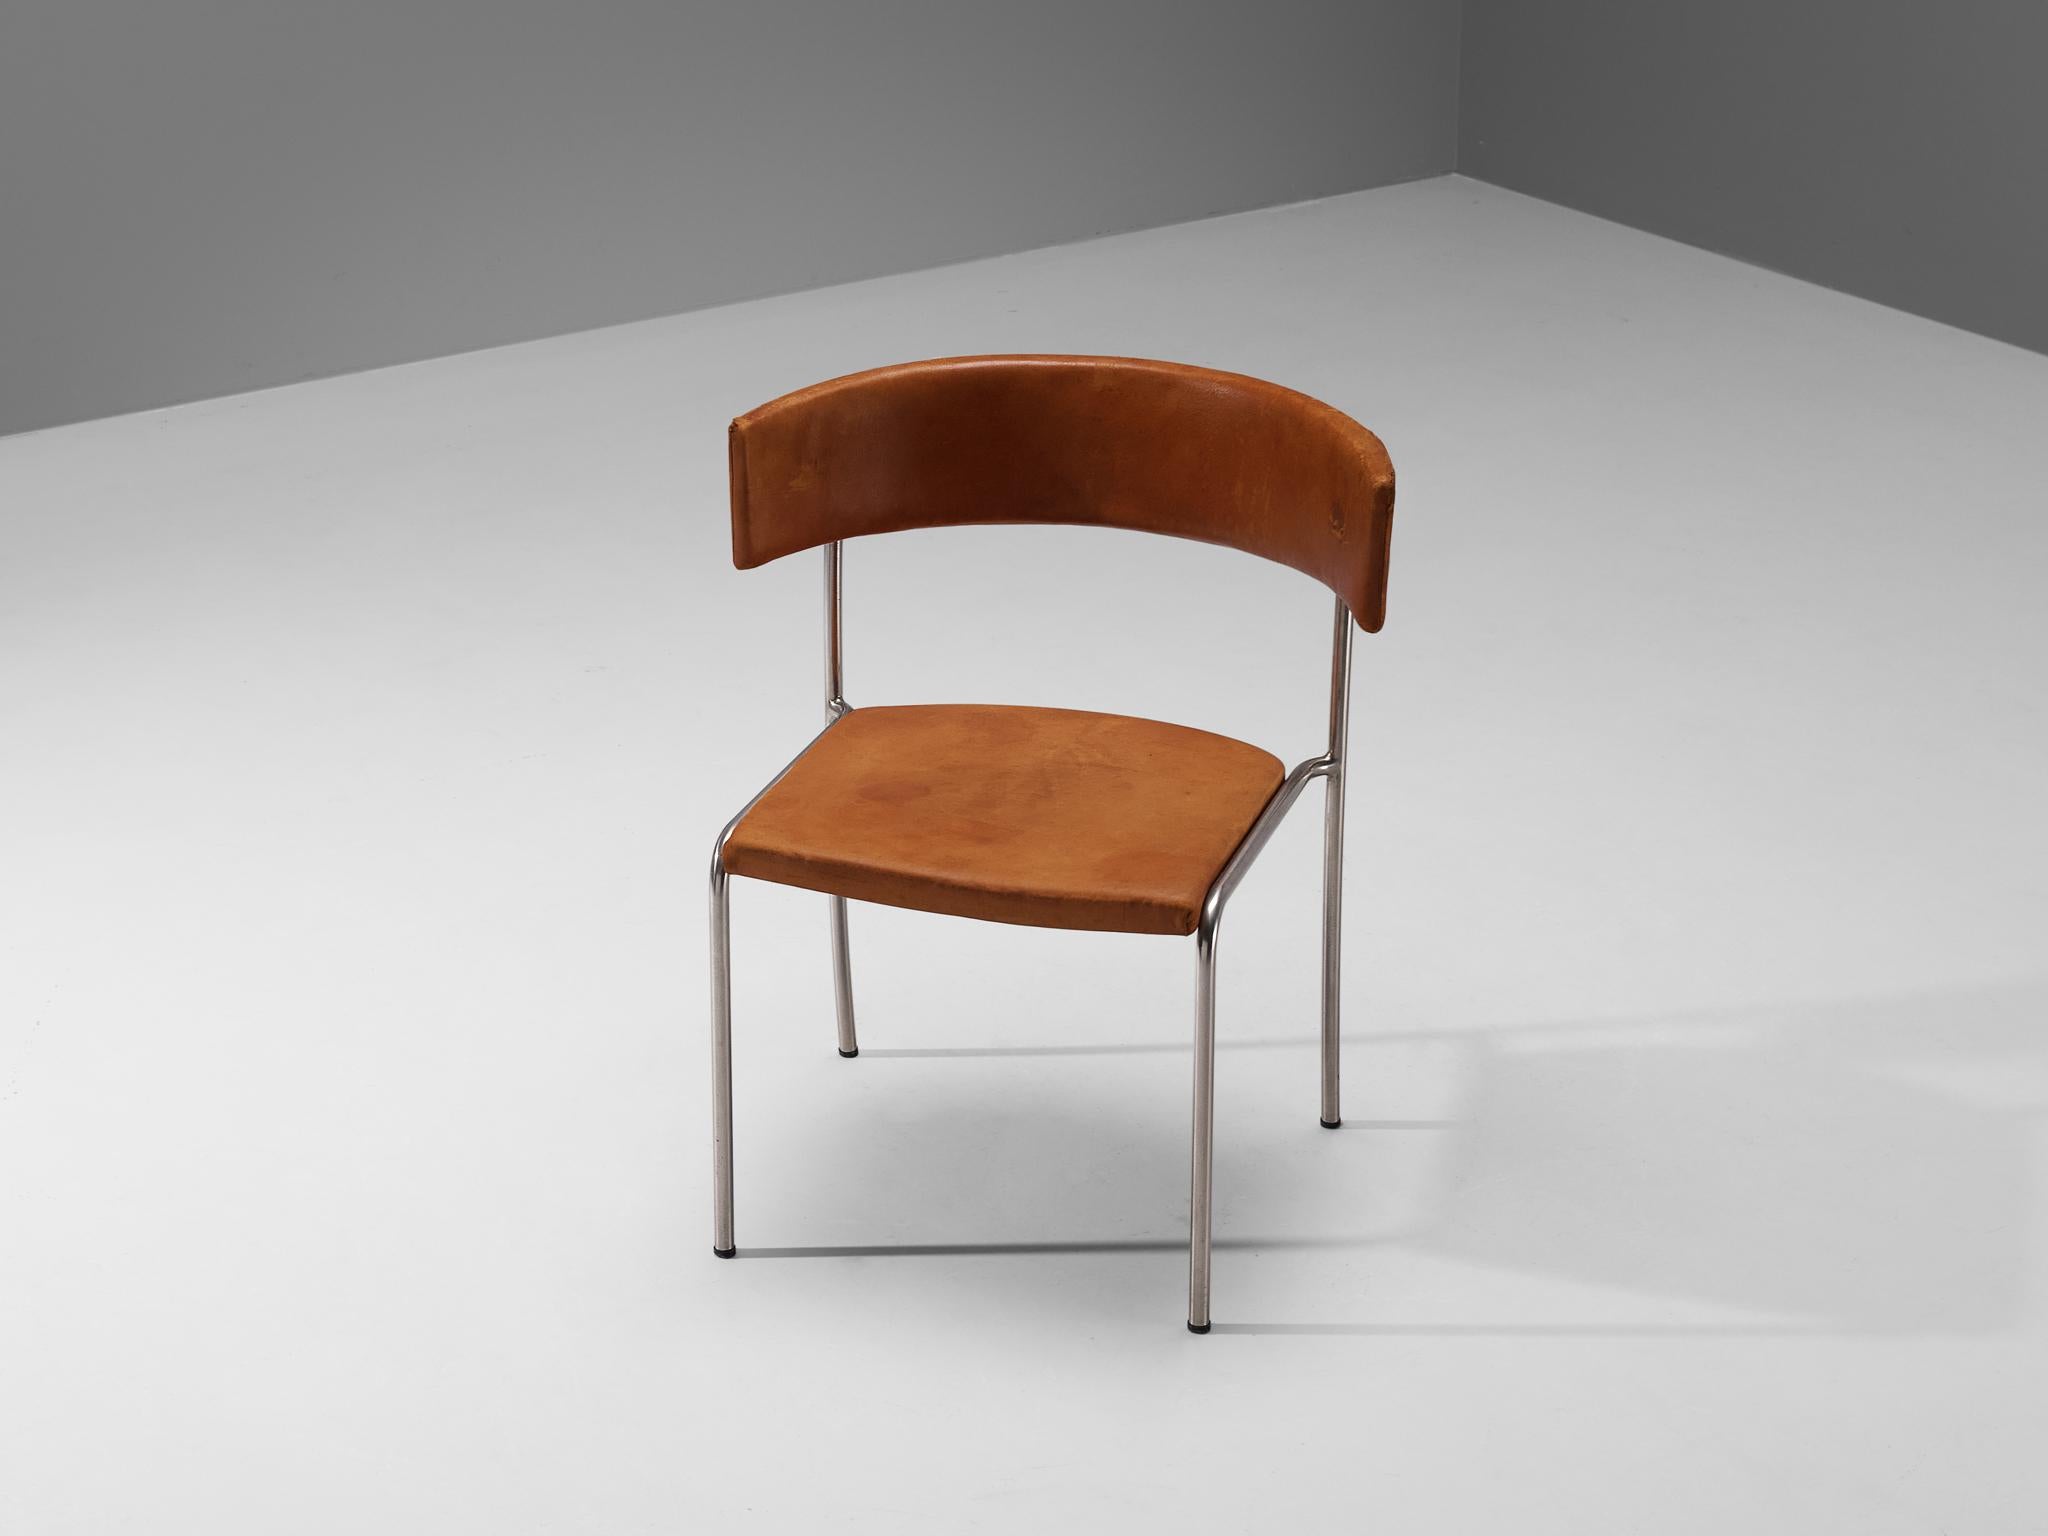 Erik Karlström, Beistellstuhl, verchromter Stahl, Leder, Schweden, 1960er Jahre.

Eleganter und moderner Esszimmerstuhl mit ungewöhnlich geformter Rückenlehne, entworfen von Erik Karlström. Dieser Stuhl wurde in den 1960er Jahren hergestellt und hat